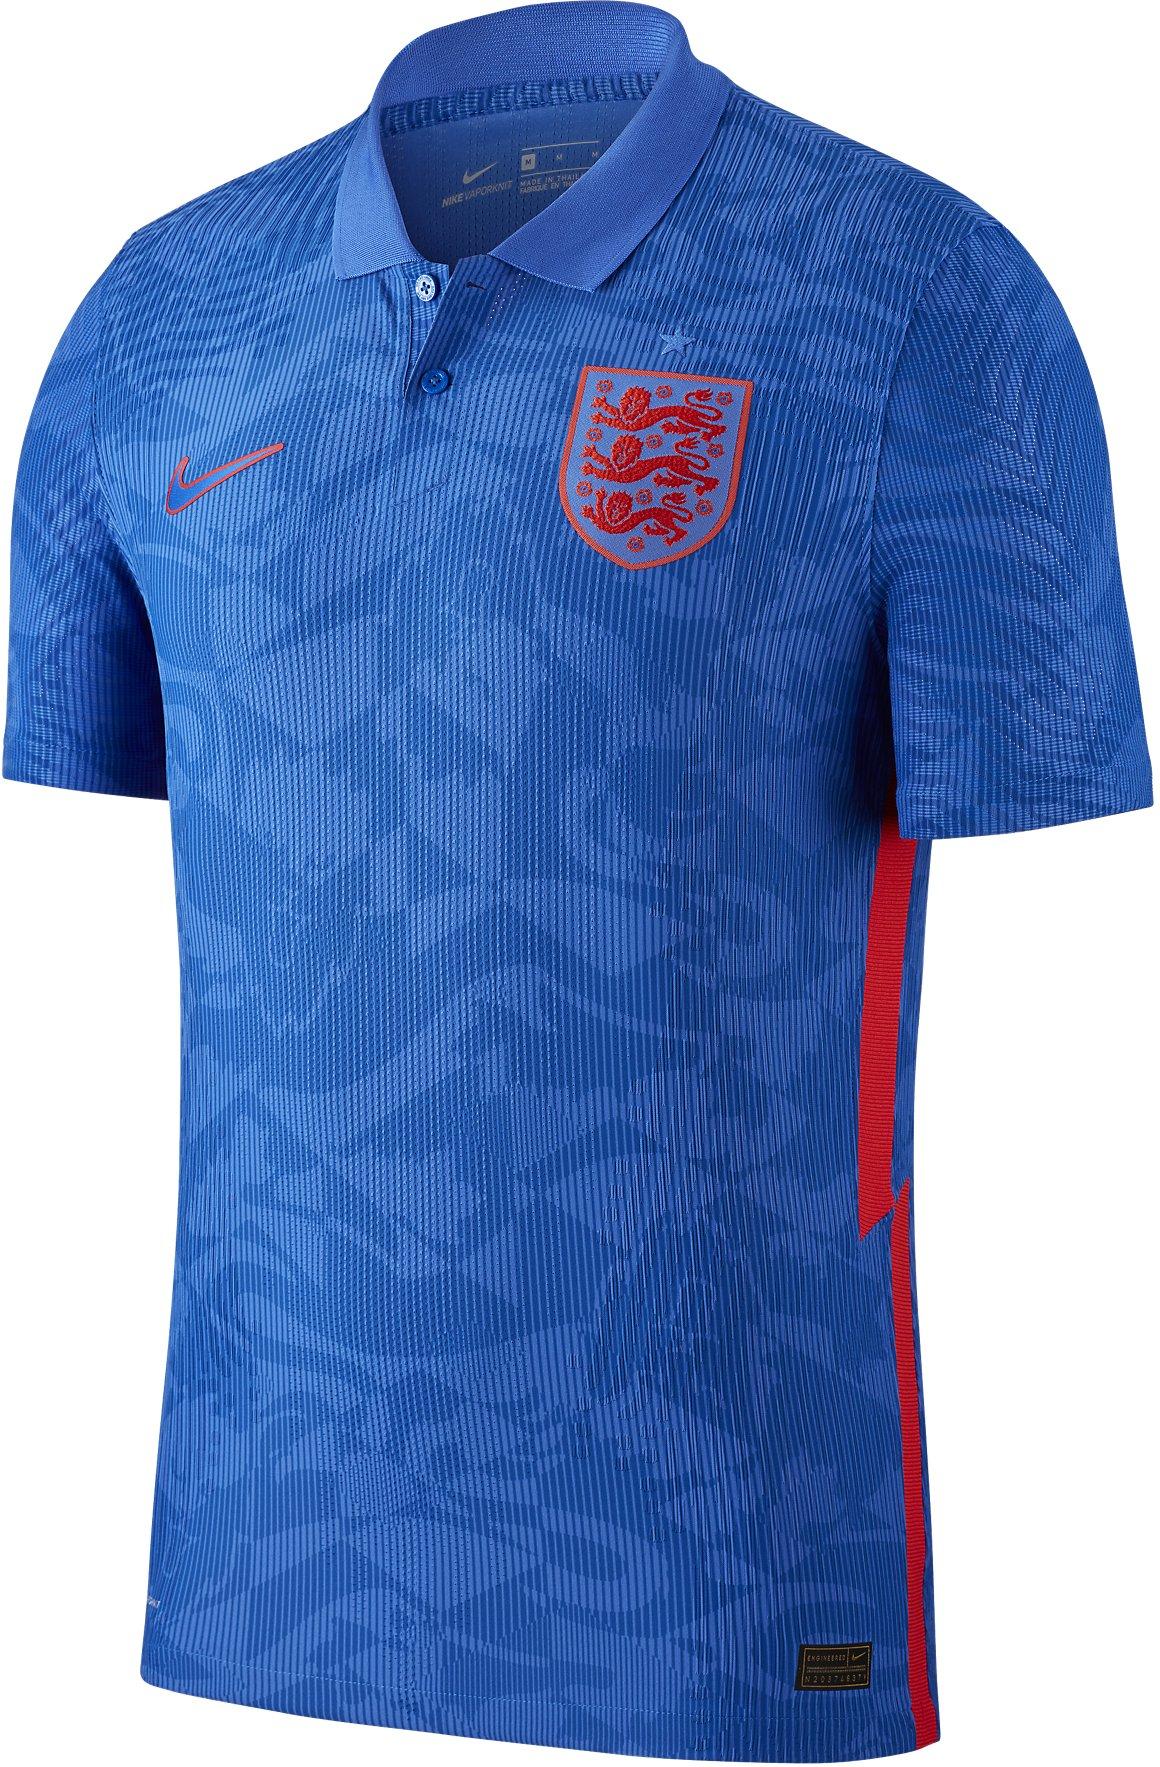 Pánský hostující dres s krátkým rukávem Nike England Vapor Match 2020